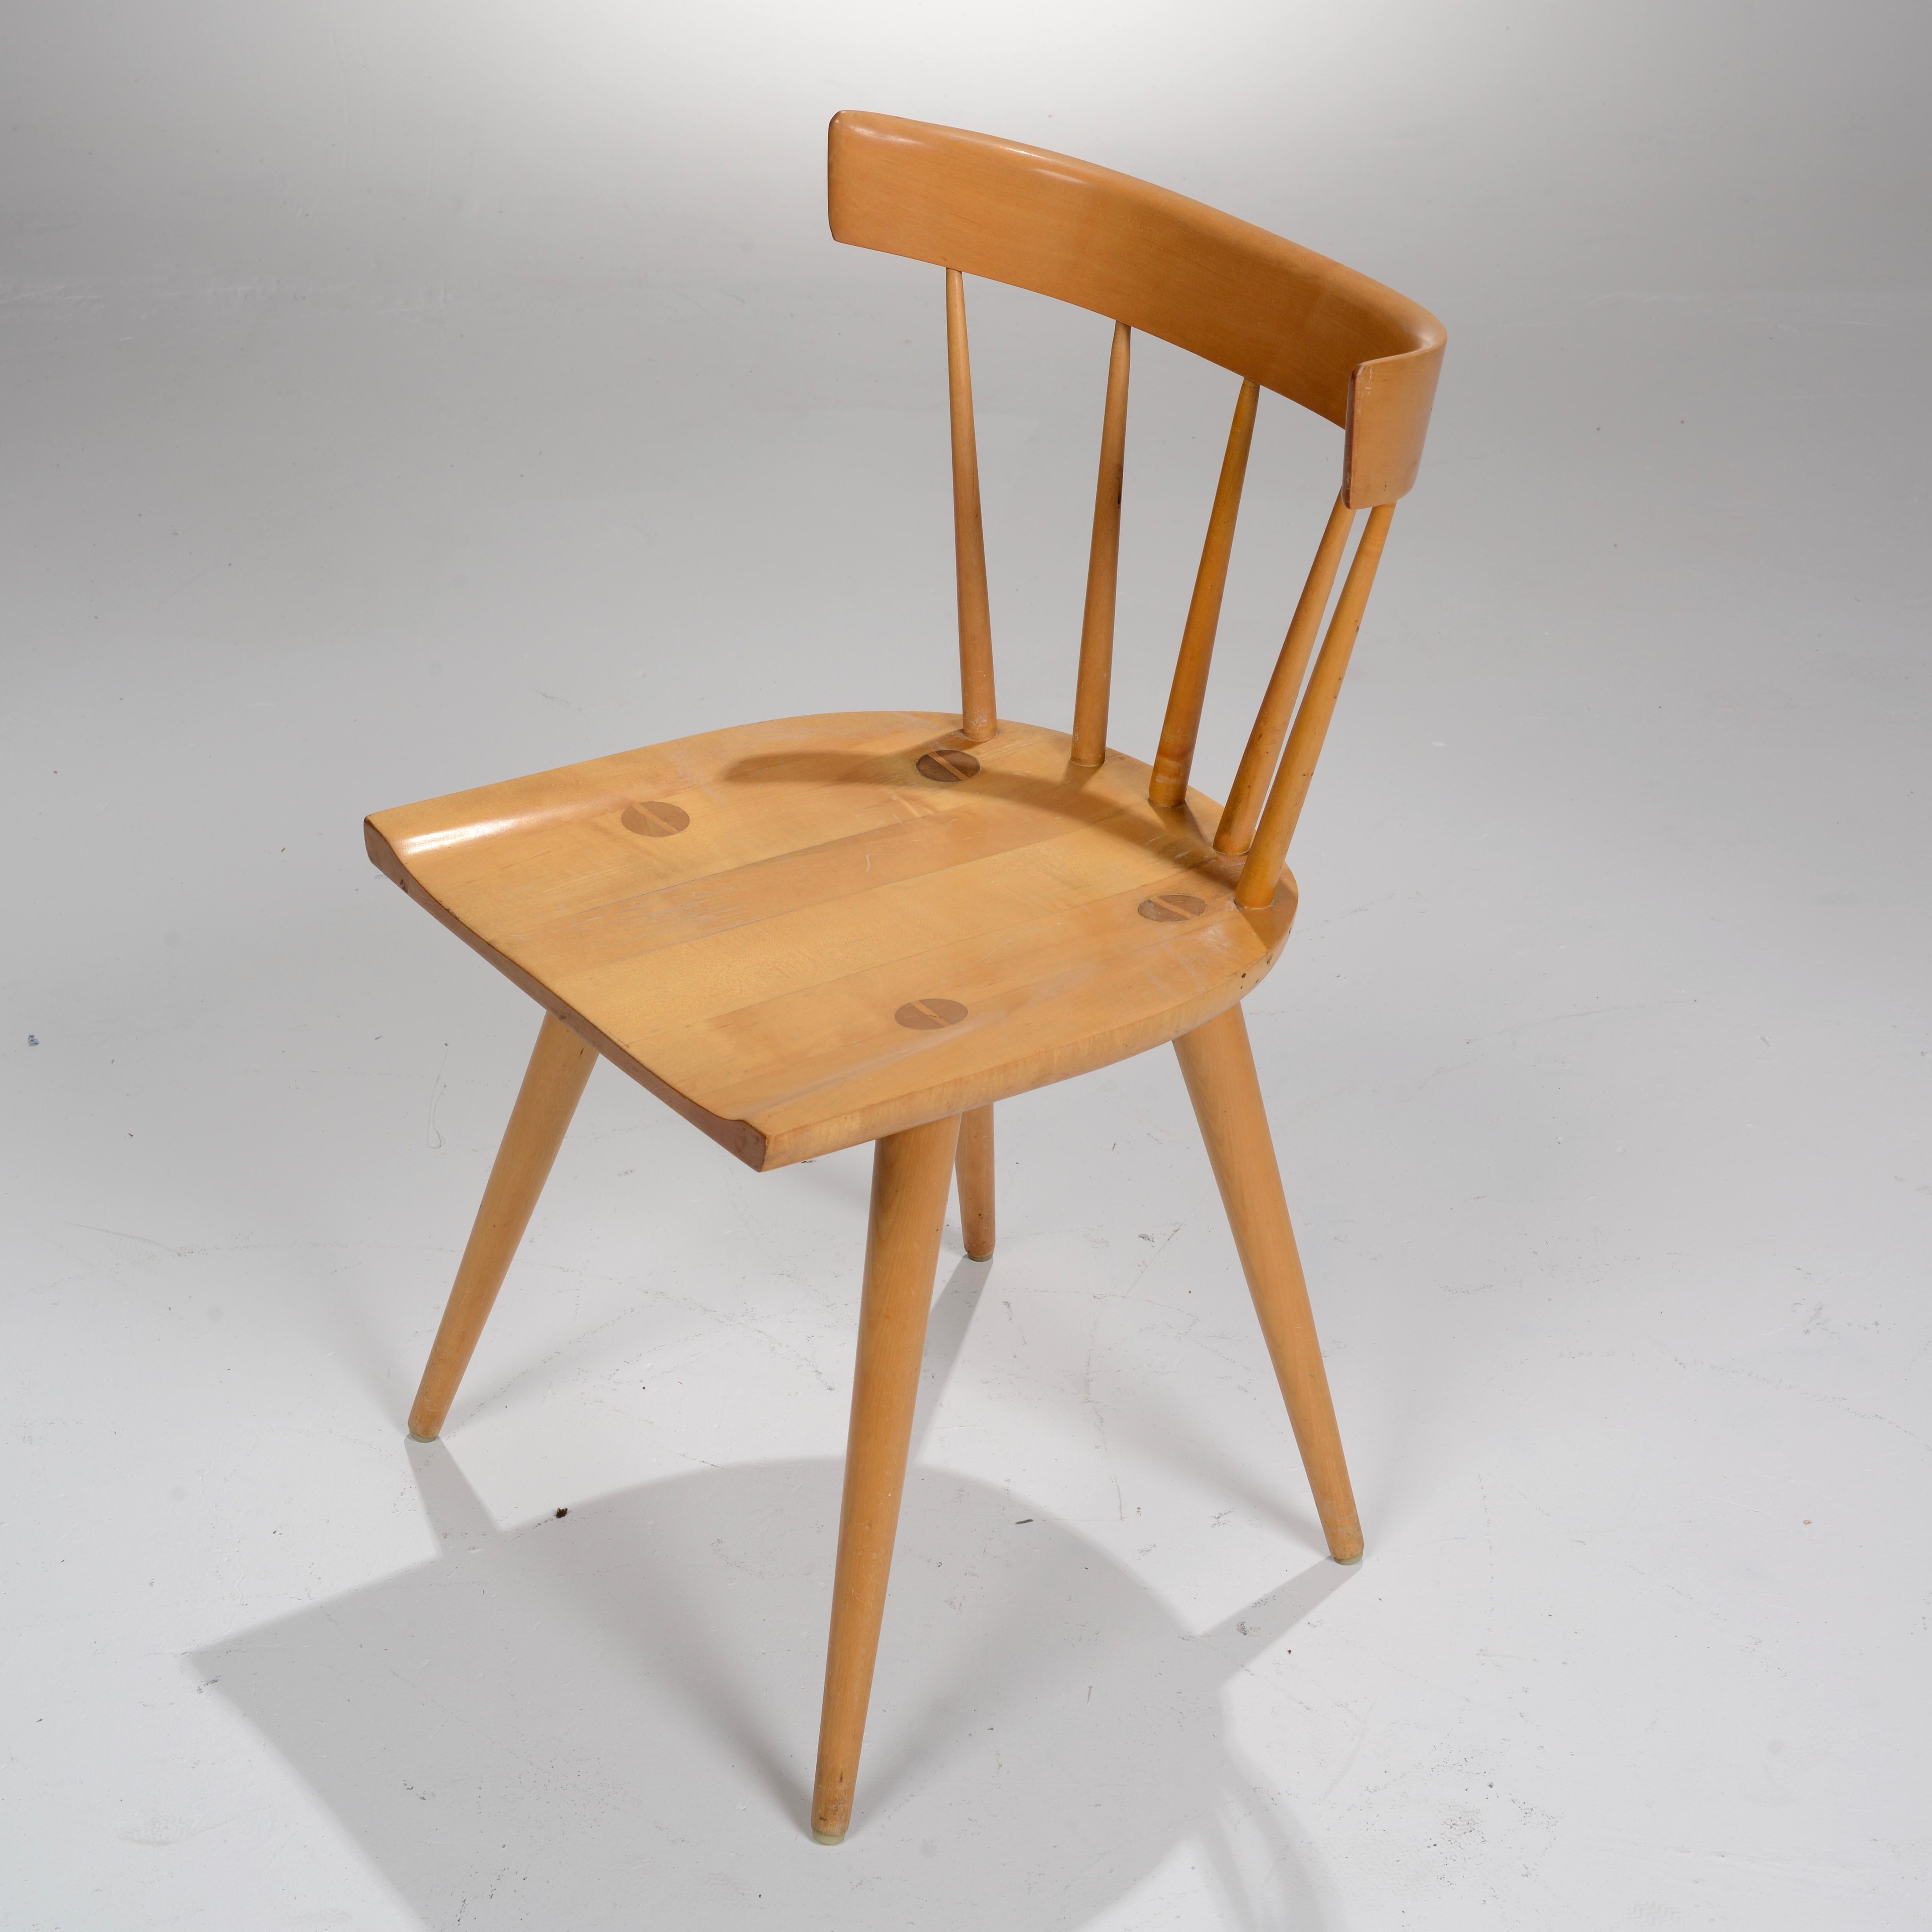 Esszimmerstuhl mit Spindellehne aus Ahornholz aus der Serie Planner Group, entworfen von Paul McCobb und hergestellt von Winchendon, Massachusetts. Die Sitzfläche ruht auf vier spitz zulaufenden Beinen und ist mit vier überdimensionalen